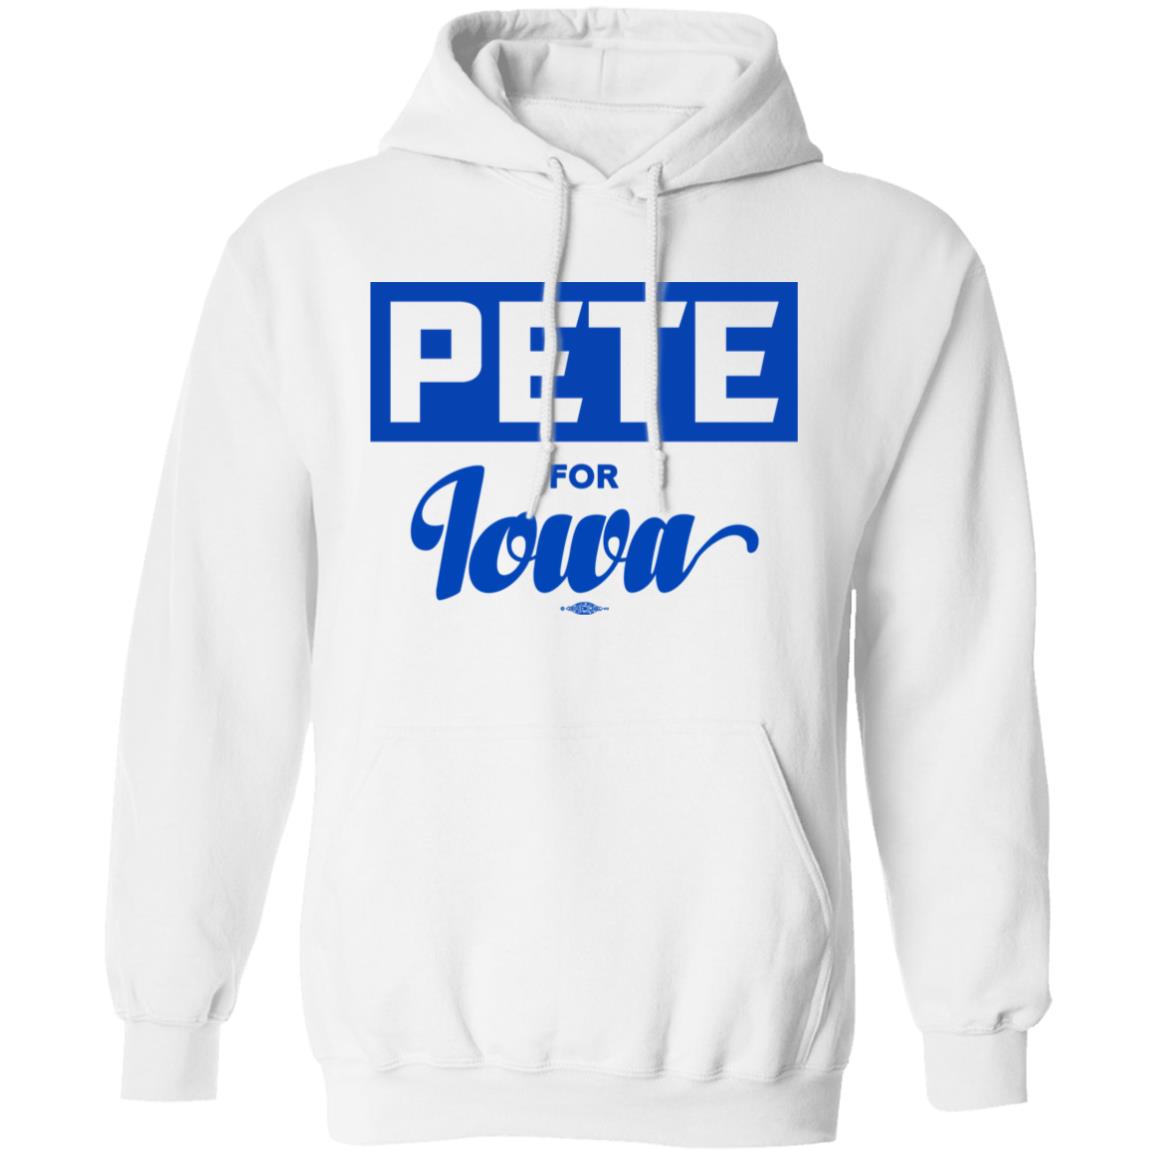 Pete For Iowa Shirt 1